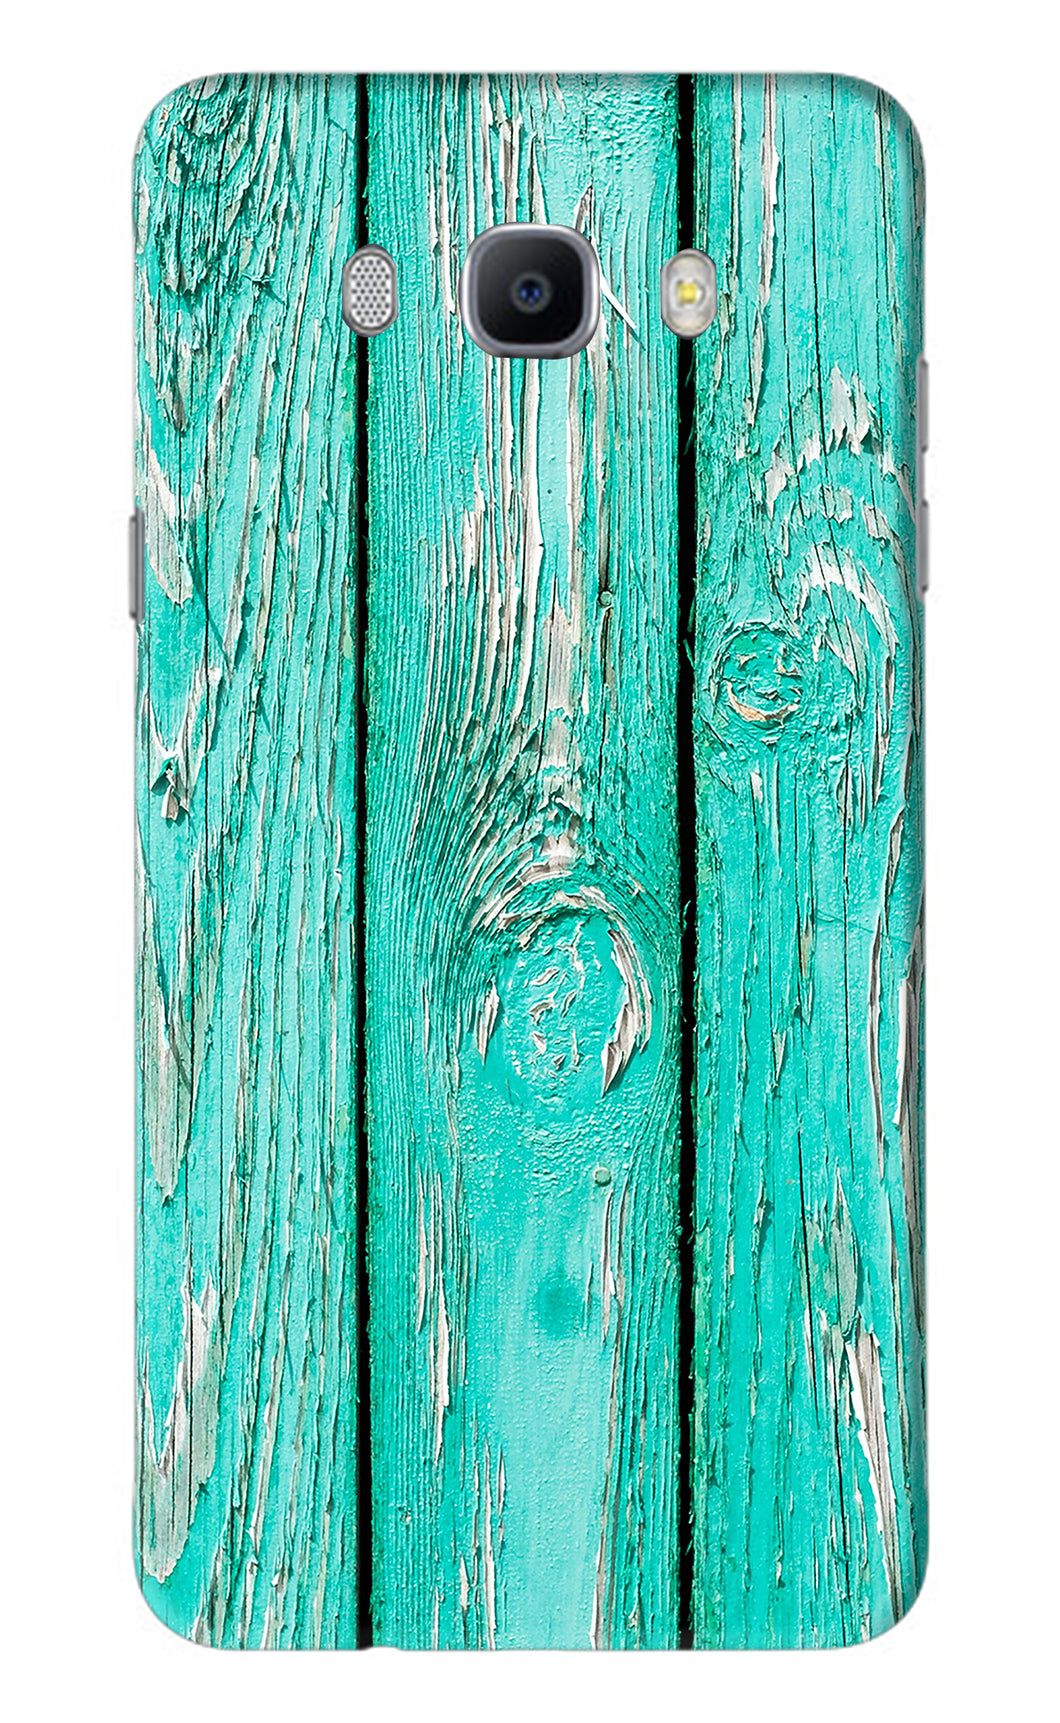 Blue Wood Samsung Galaxy J7 2016 Back Skin Wrap